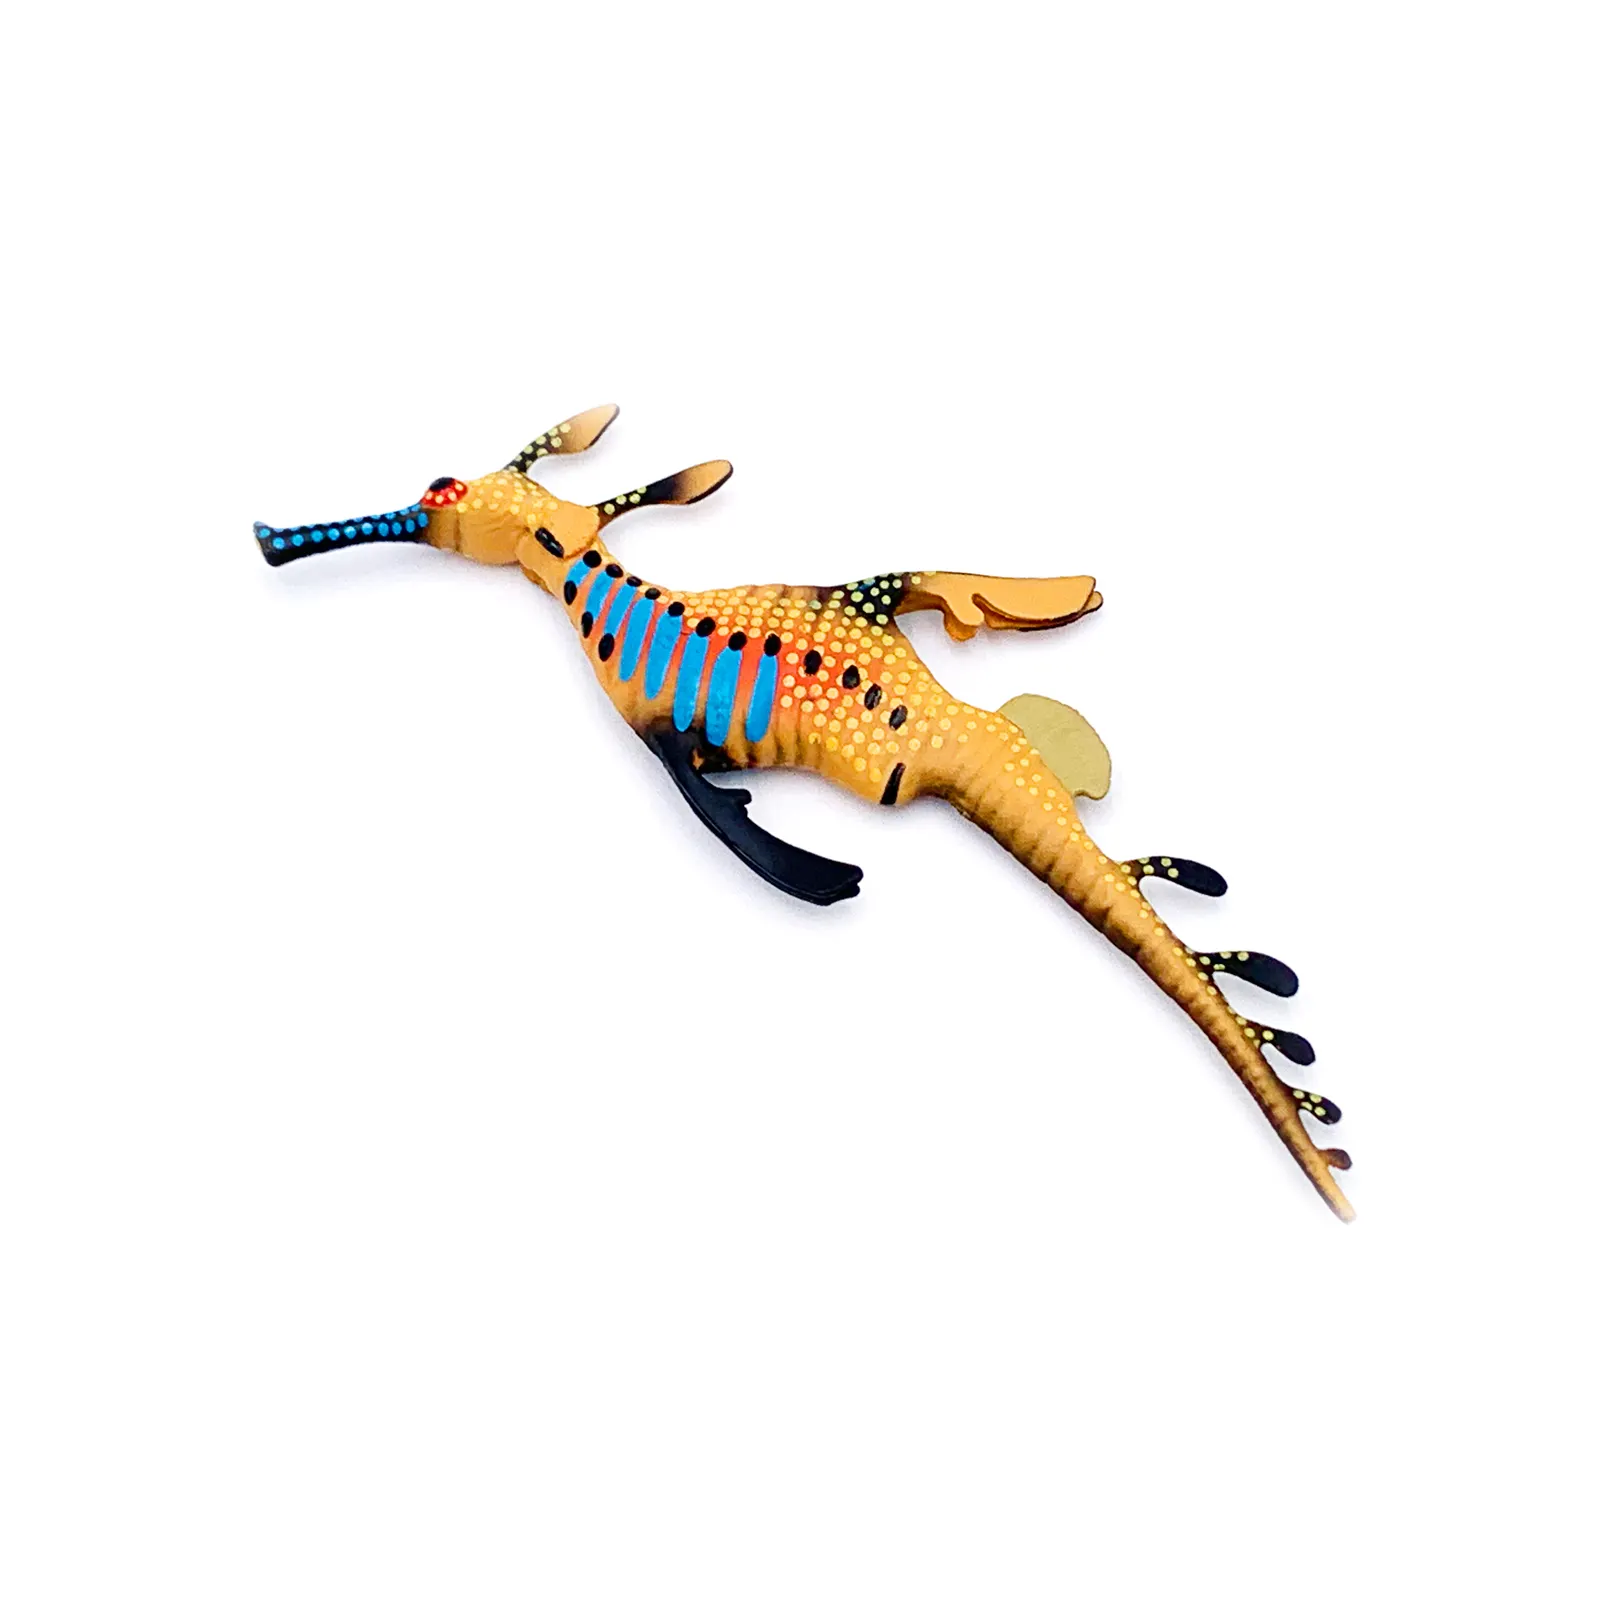 Realistici giocattoli di bambola di plastica in PVC di alta qualità per animali marini realistici animali ecologici giocattoli draghi marini